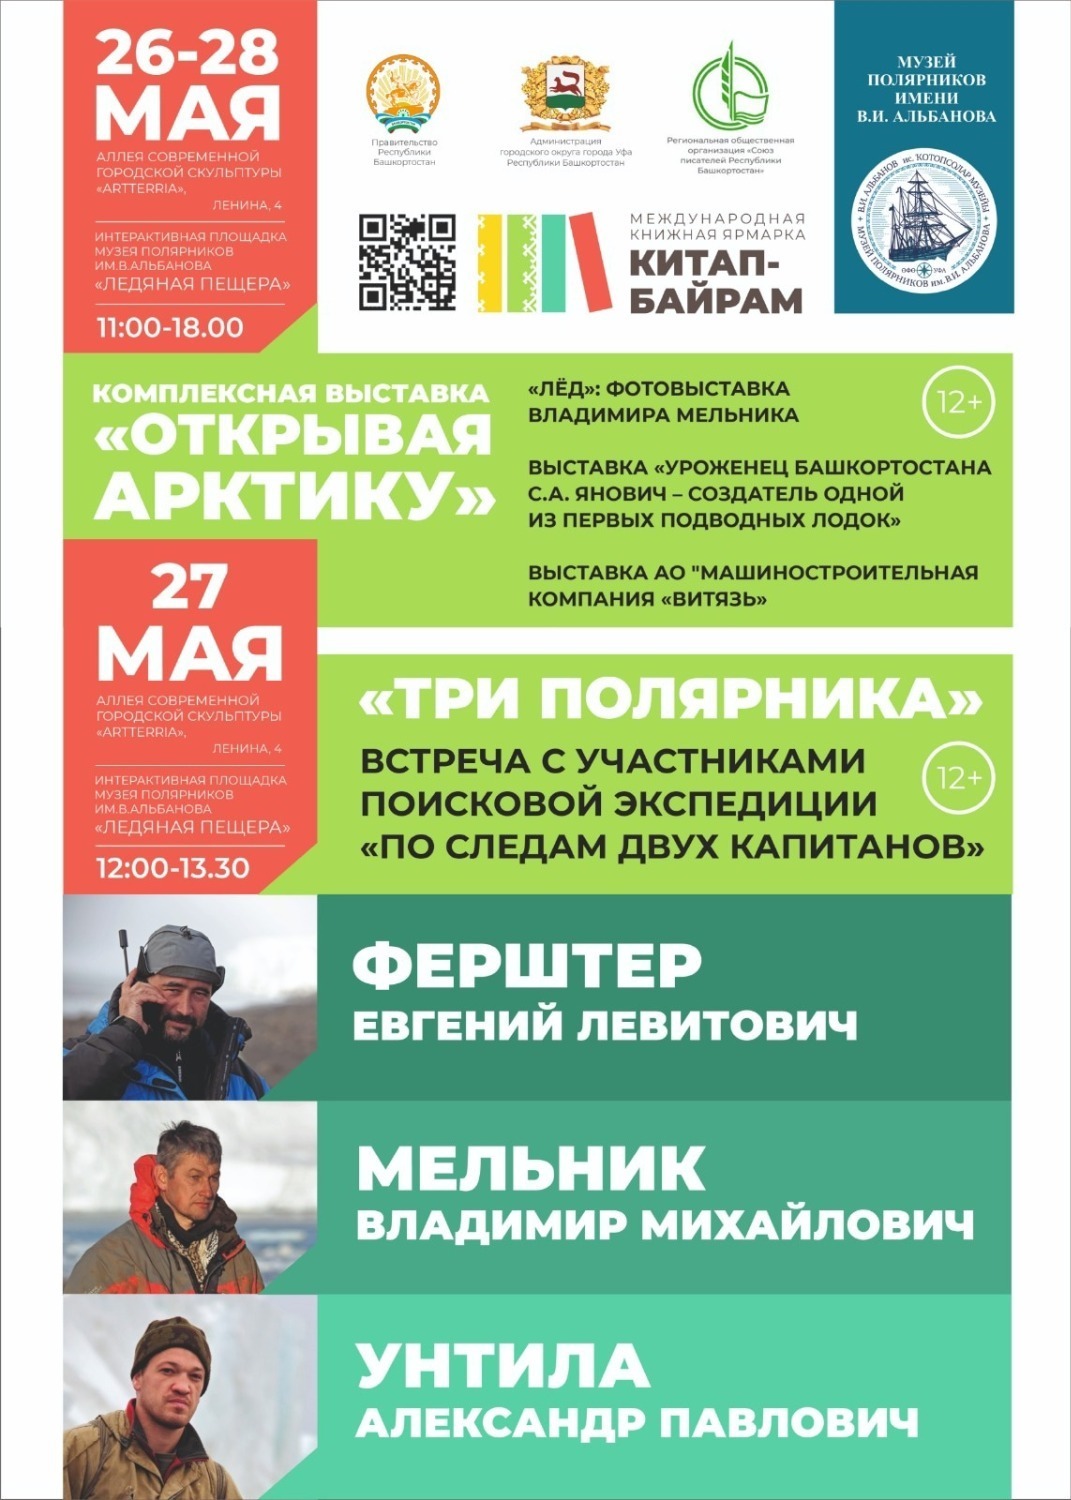 В Башкирию на ярмарку «Китап-байрам» пригласили участников экспедиции «По следам двух капитанов»